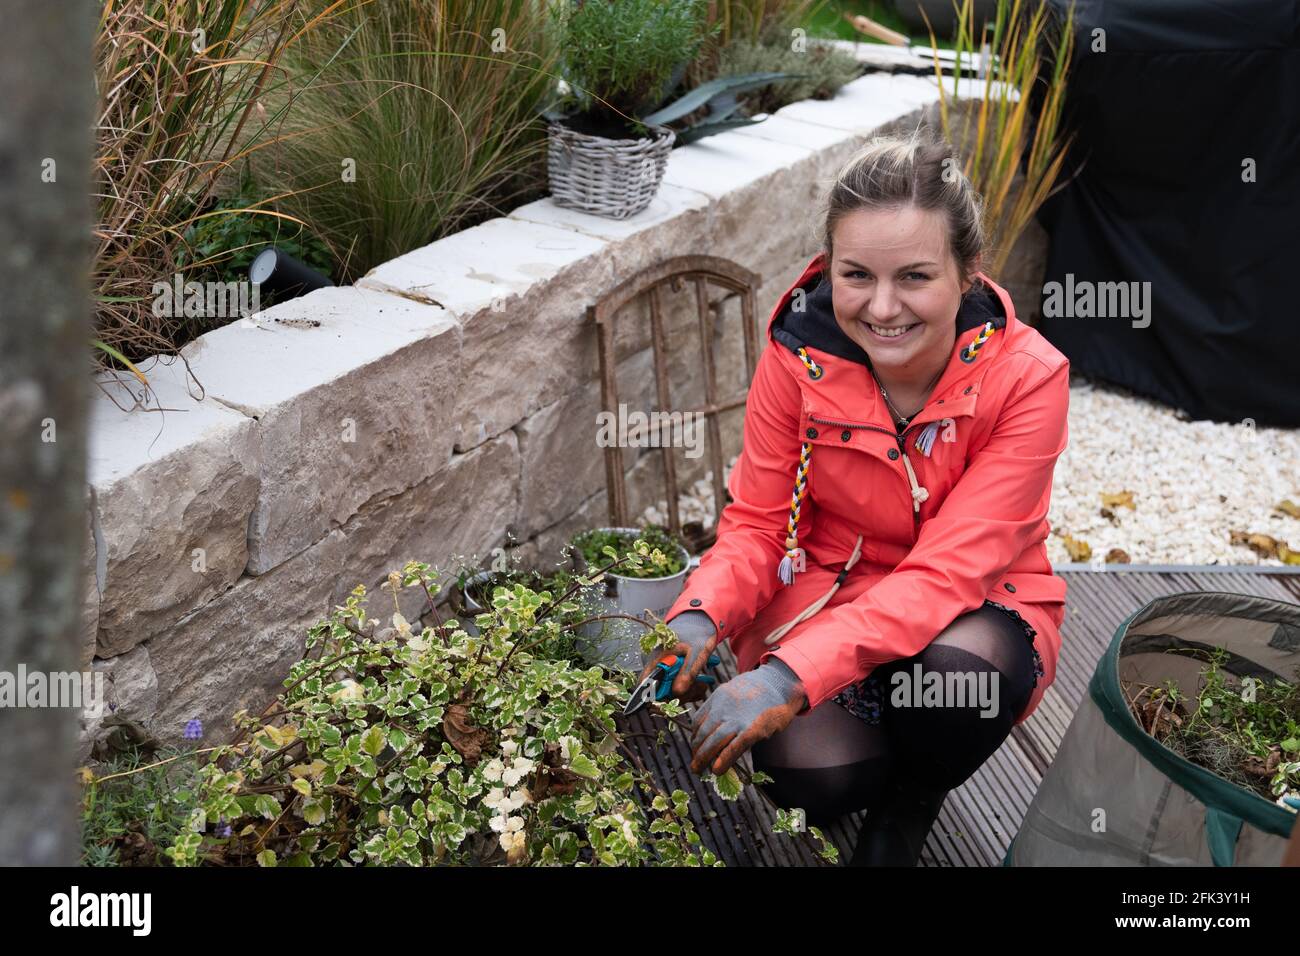 Atractiva mujer rubia trabajando en el jardín, cortando plantas y foie gras Foto de stock